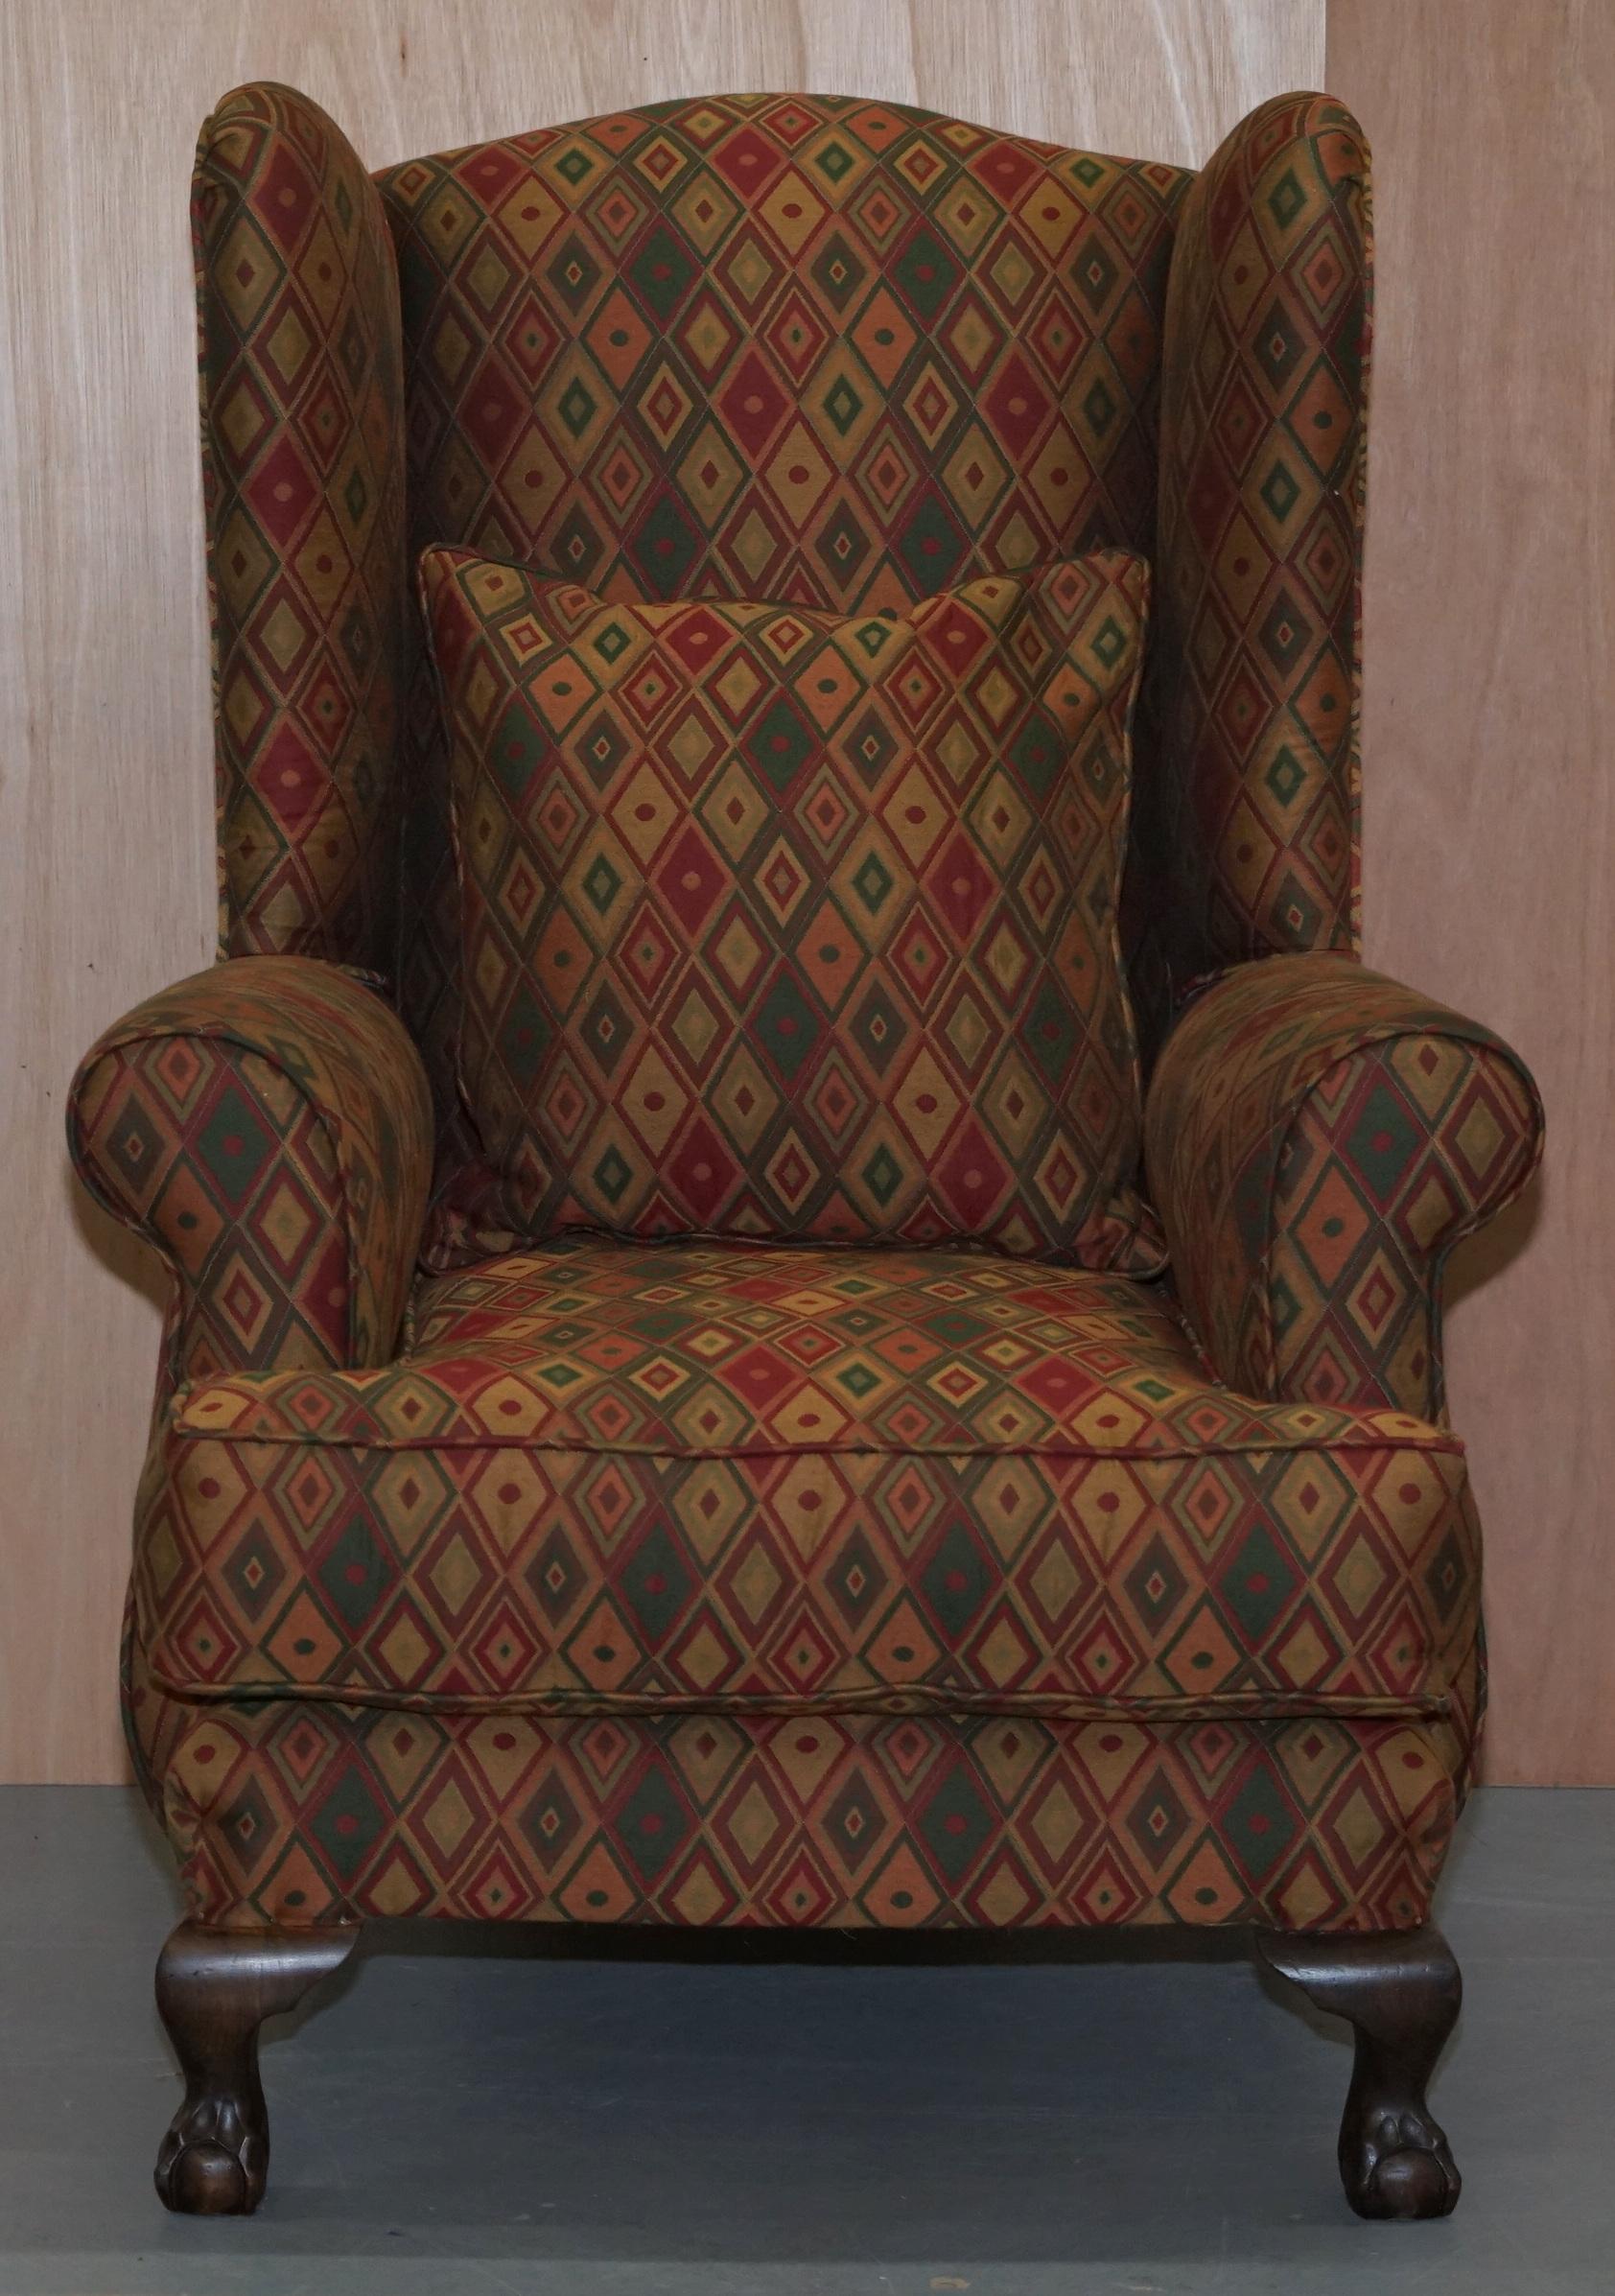 Wir freuen uns, diesen schönen gepolsterten Ohrensessel im Kilim-Stil in durchweg gutem Vintage-Zustand zum Verkauf anbieten zu können 

Ein gut gemacht und dekorative Sessel, die sehr bequem ist, ist die Polsterung Kilim-Stil, wie erwähnt, die